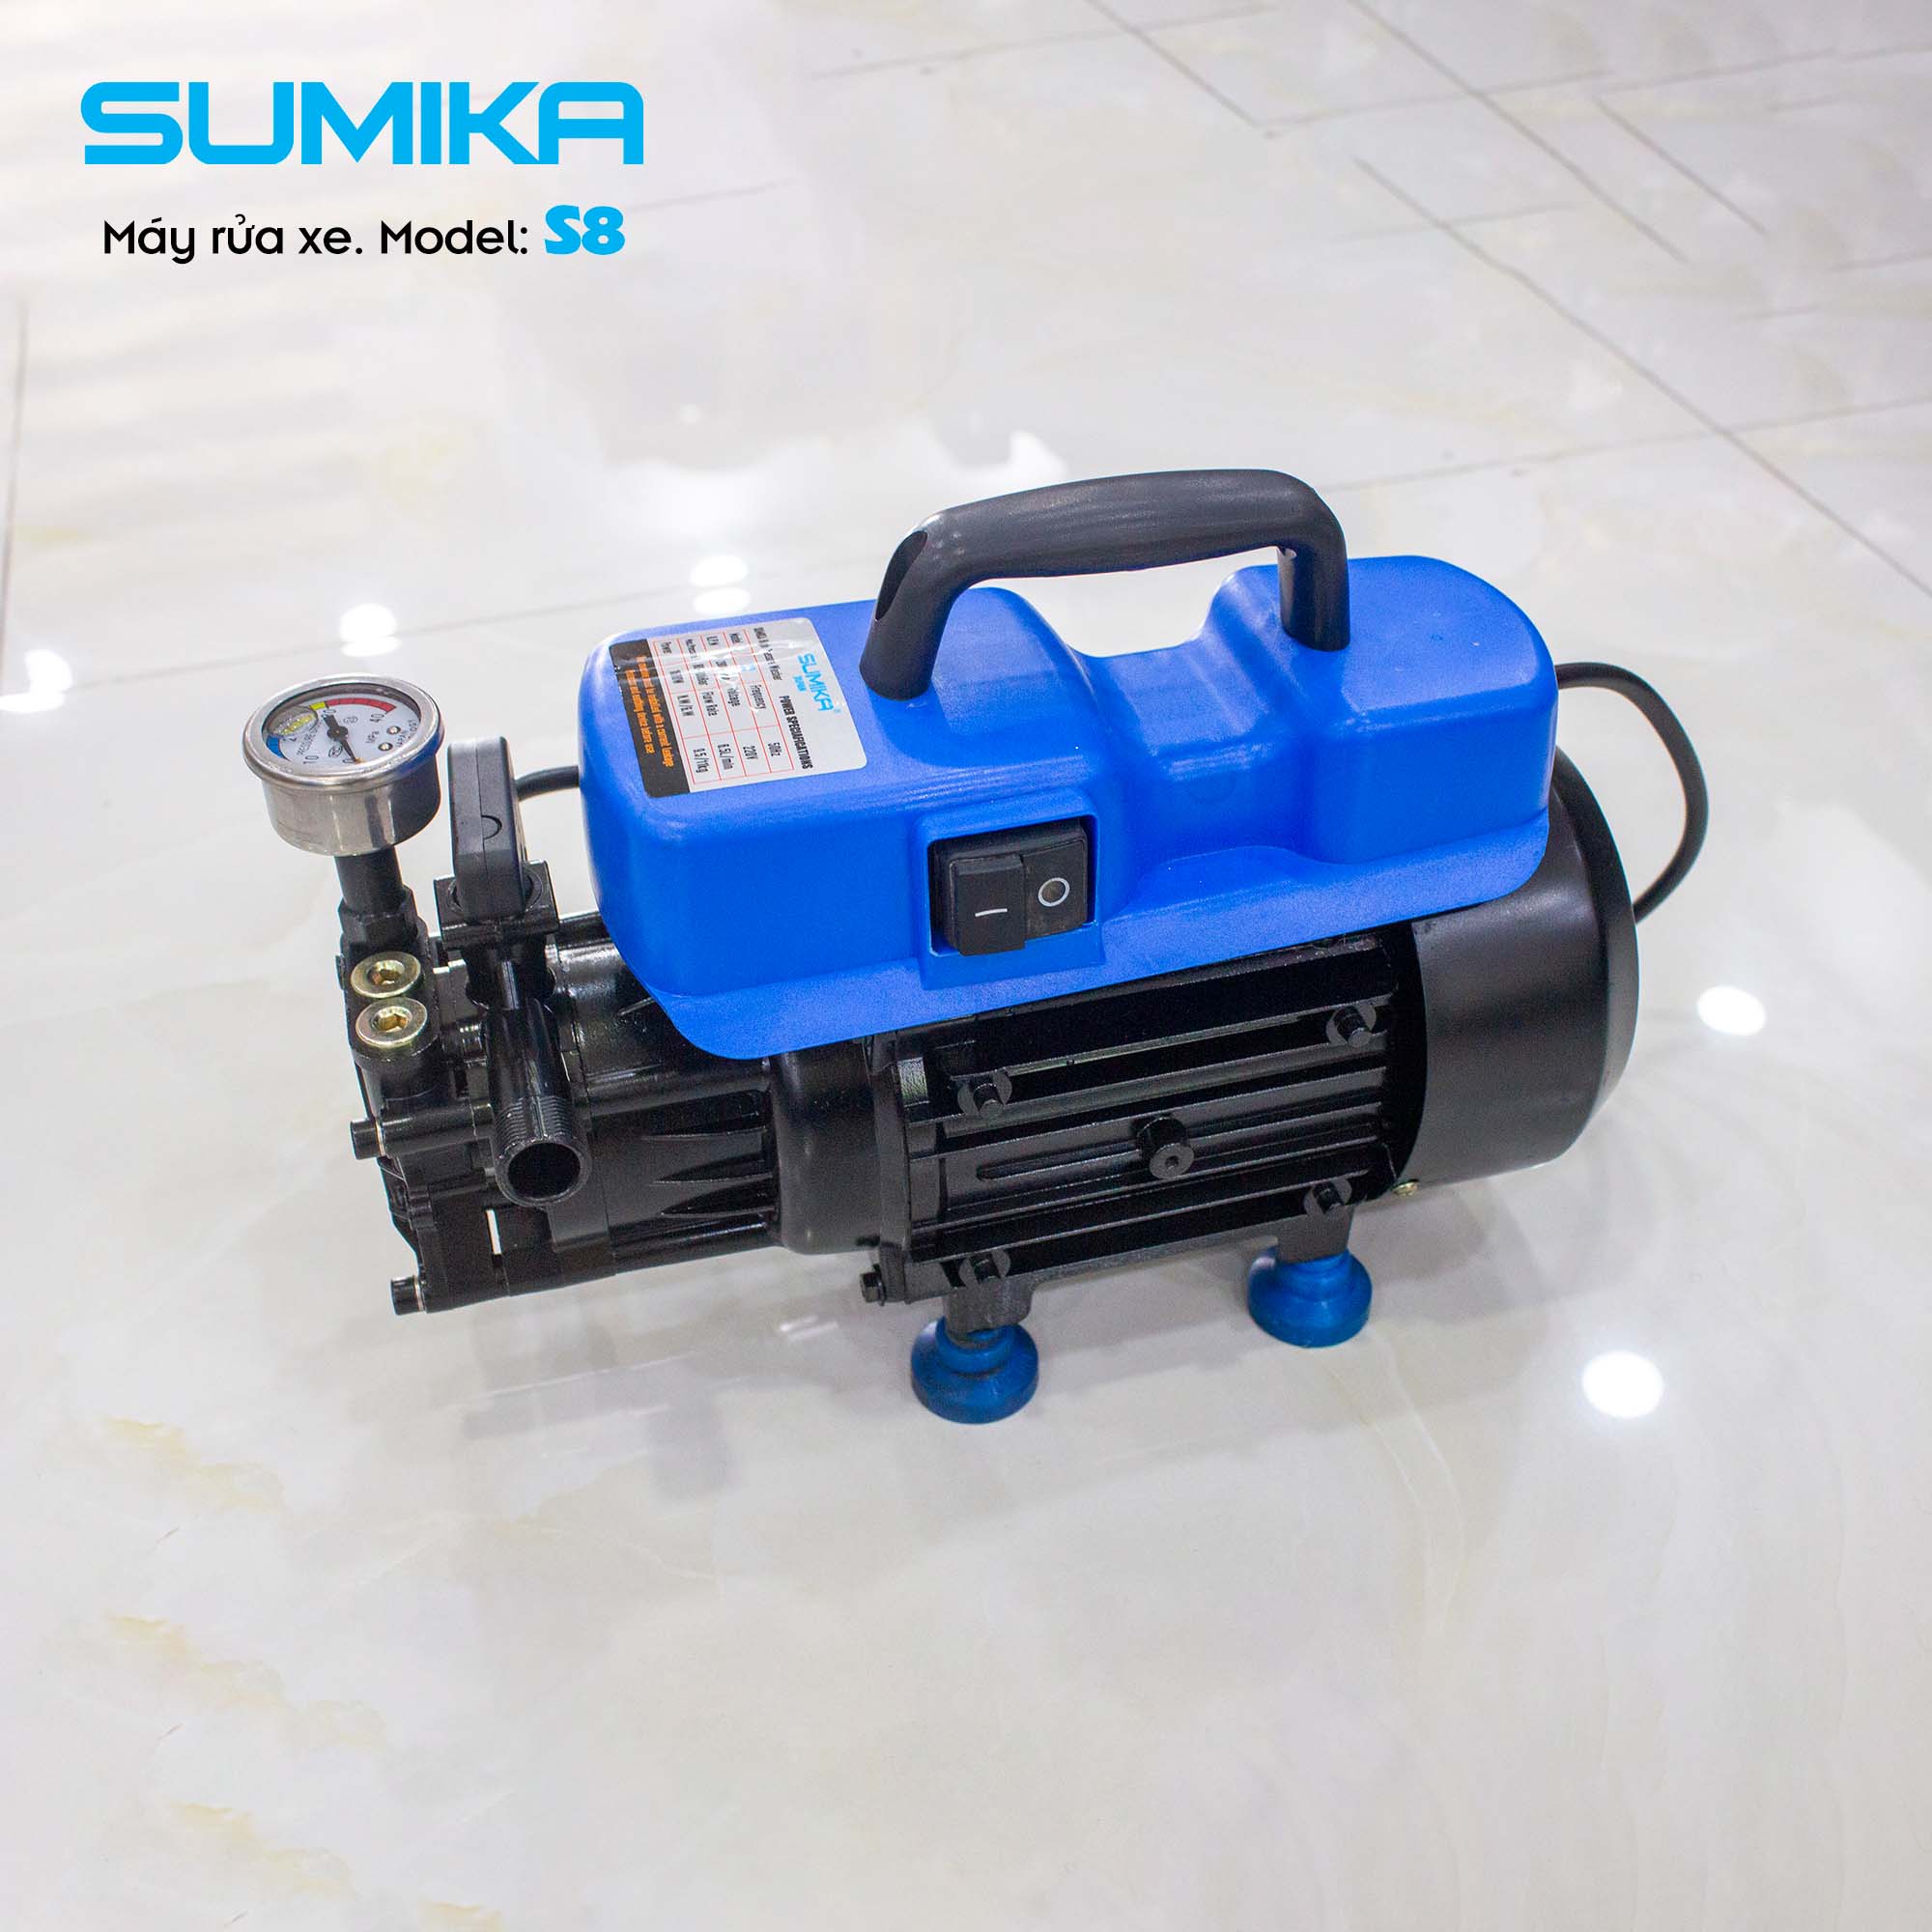 Máy rửa xe áp lực cao SUMIKA S8, công suất 1600W, 100% lõi đồng, chế độ Auto Stop